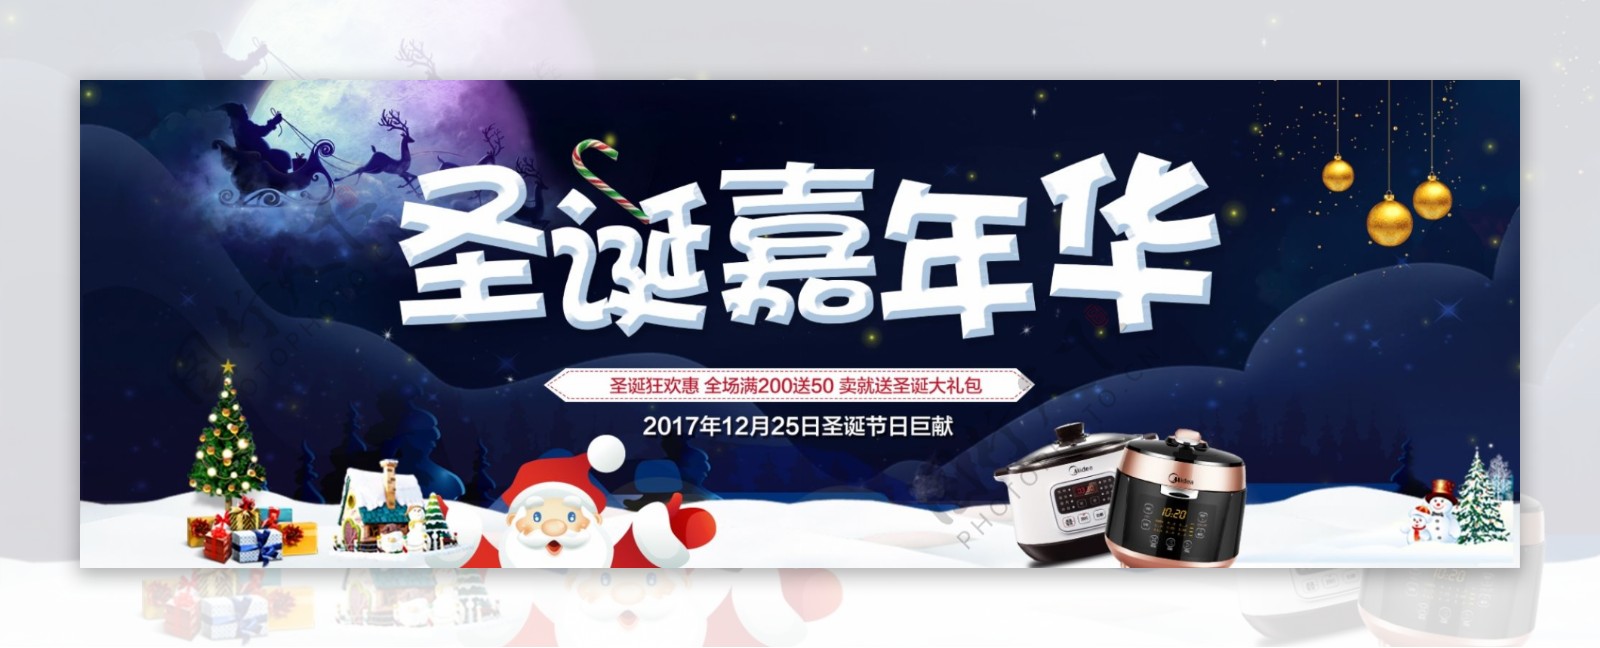 圣诞树圣诞节淘宝促销节日海报banner